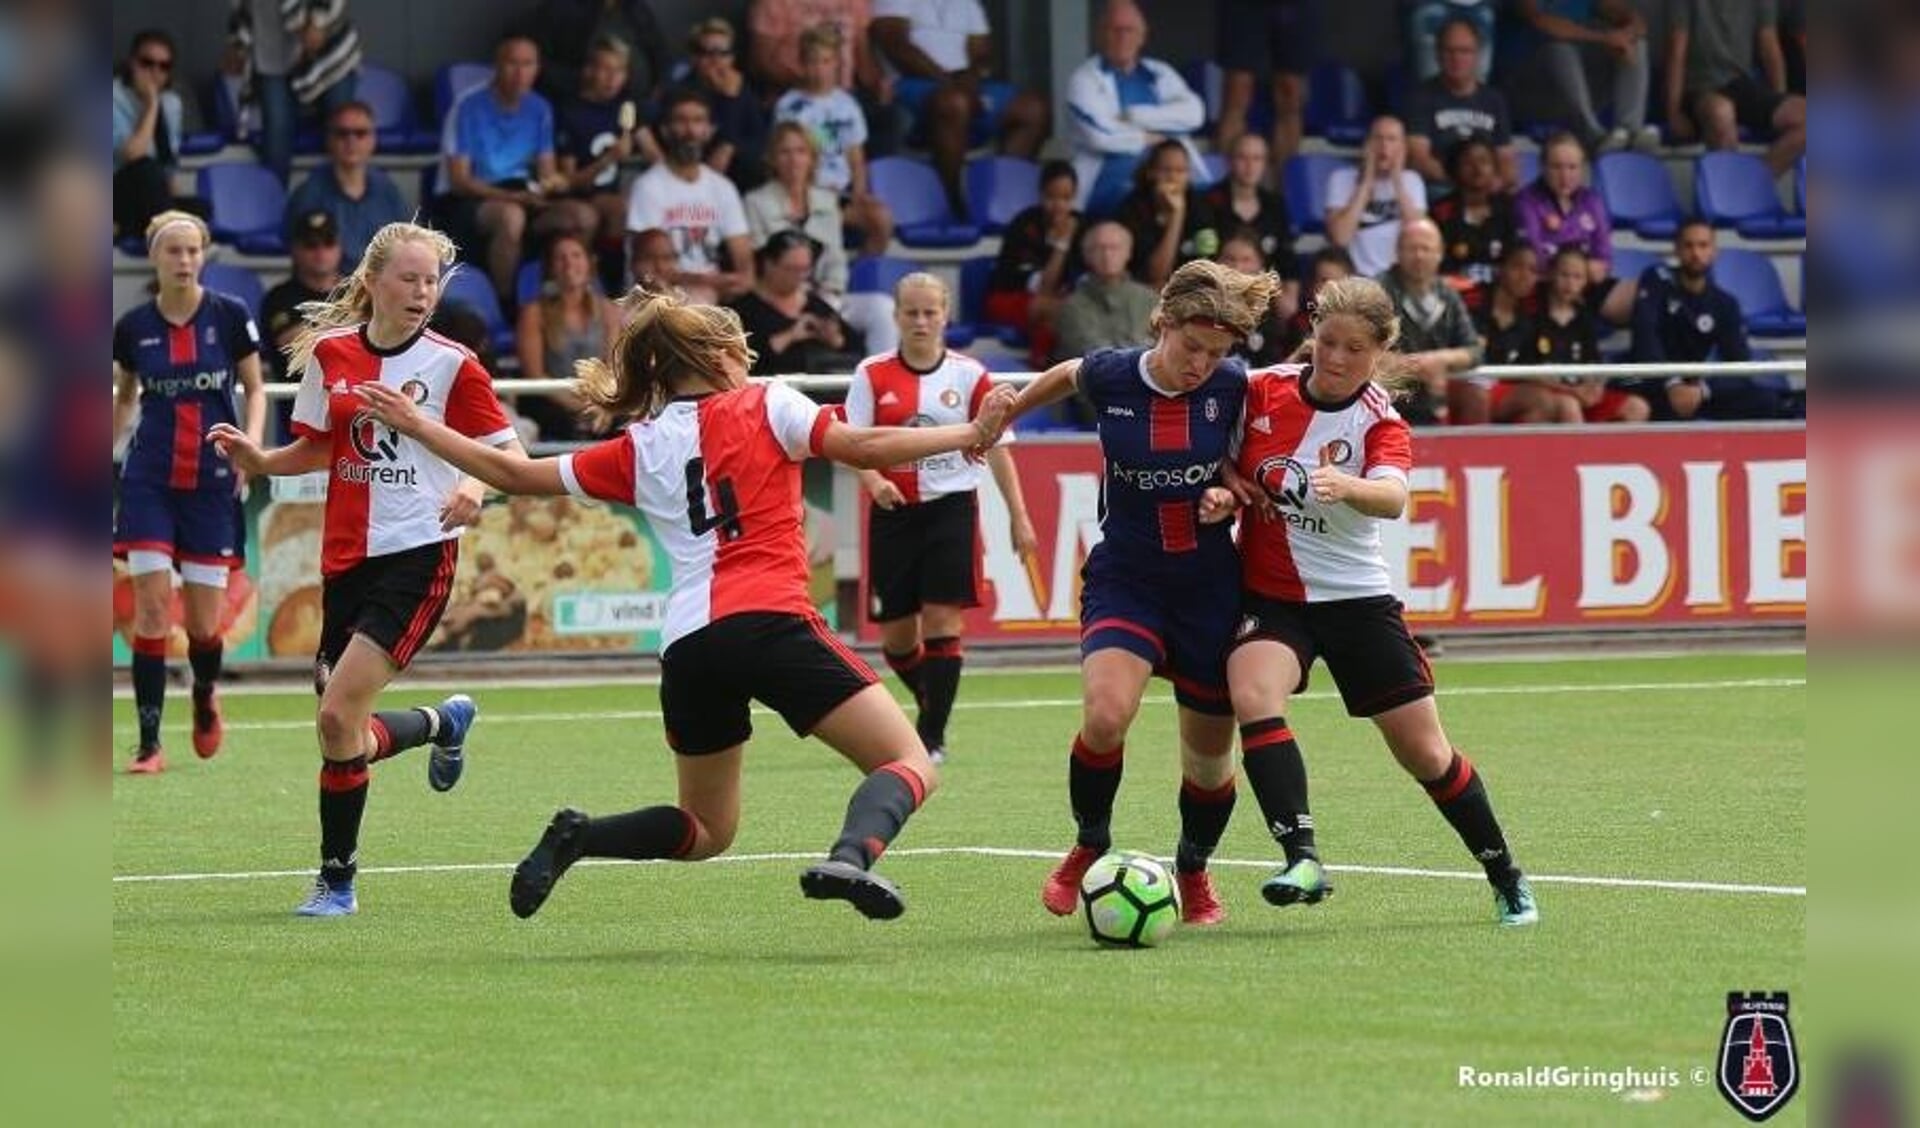 De meiden van Feyenoord wonnen vorig jaar in de onder 16 poule.